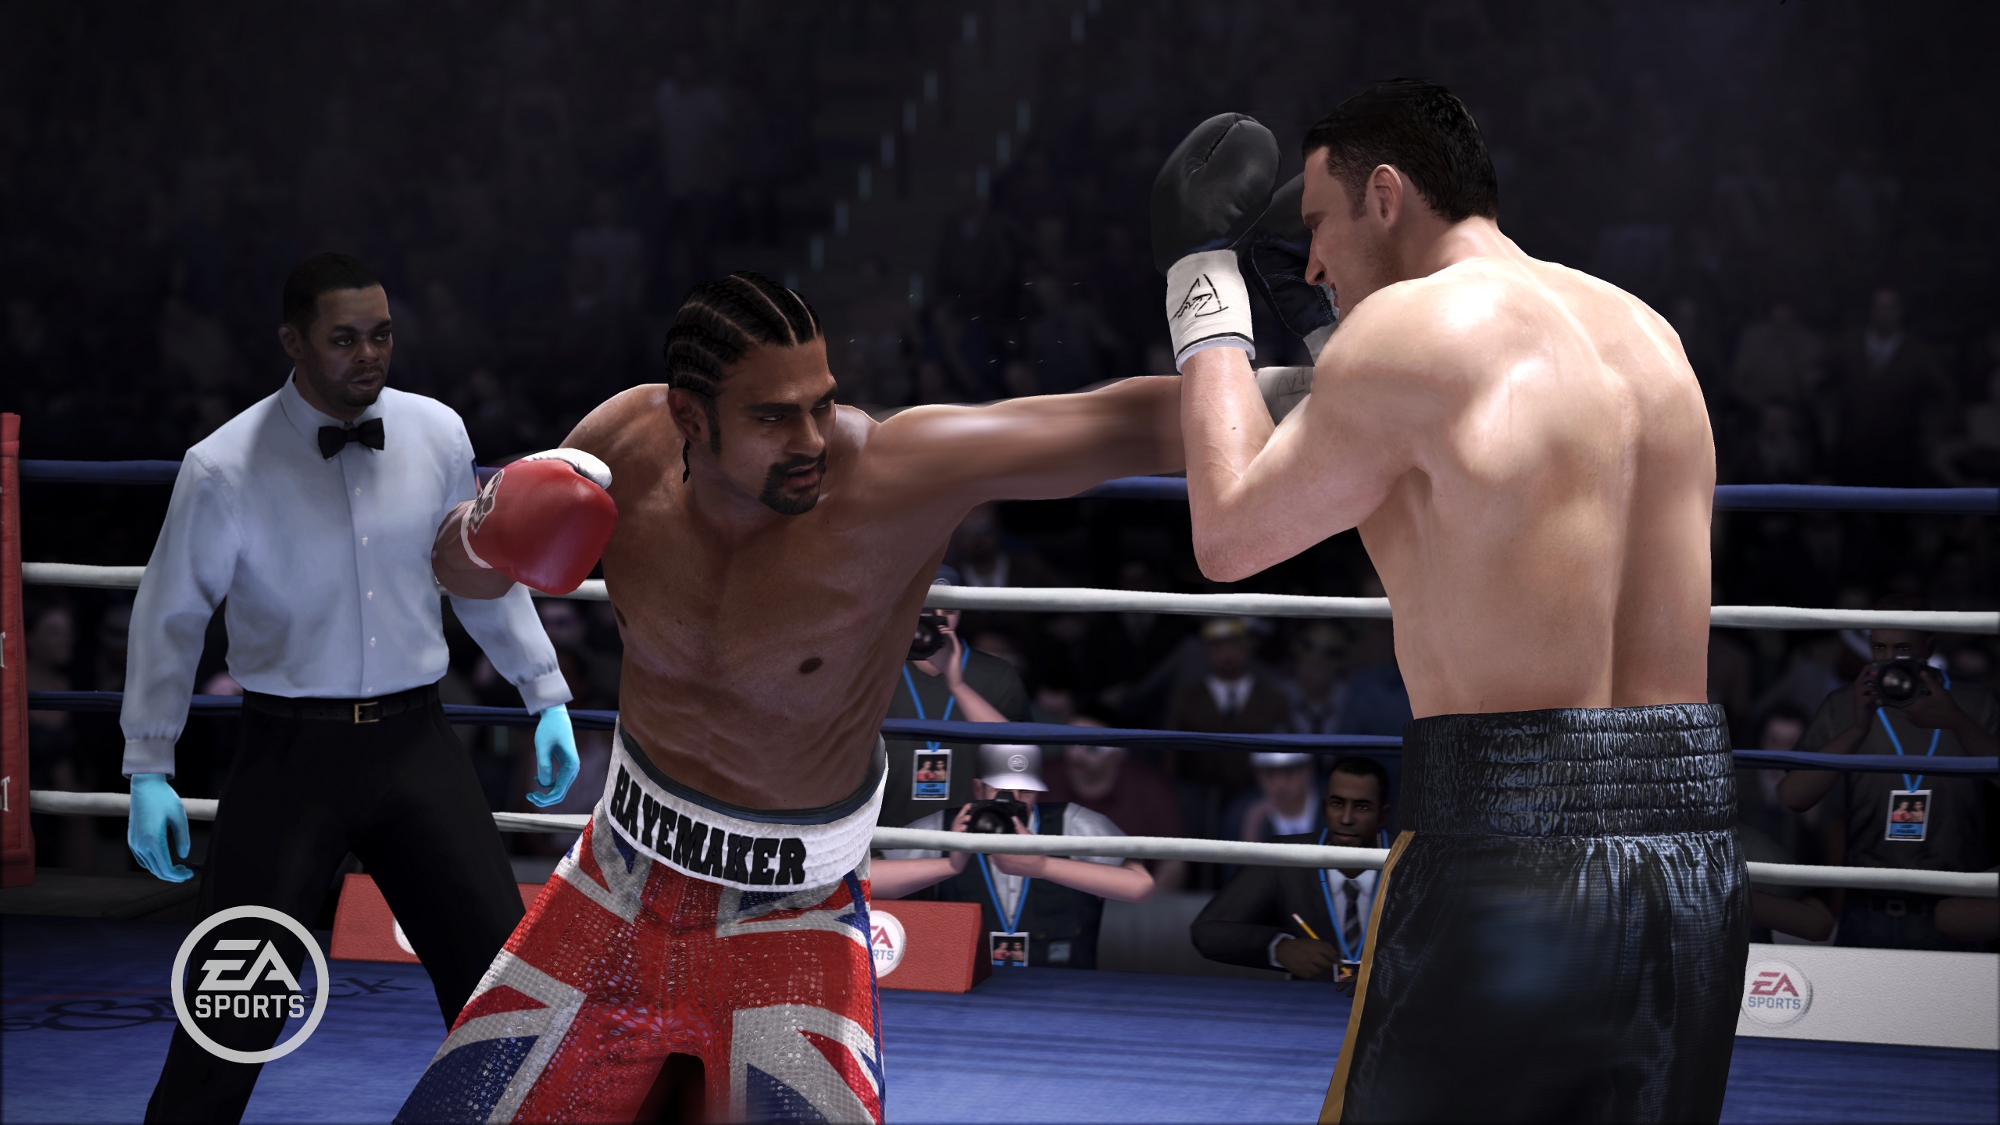 Rygter: Et nyt Fight Night-spil kan blive annonceret i år